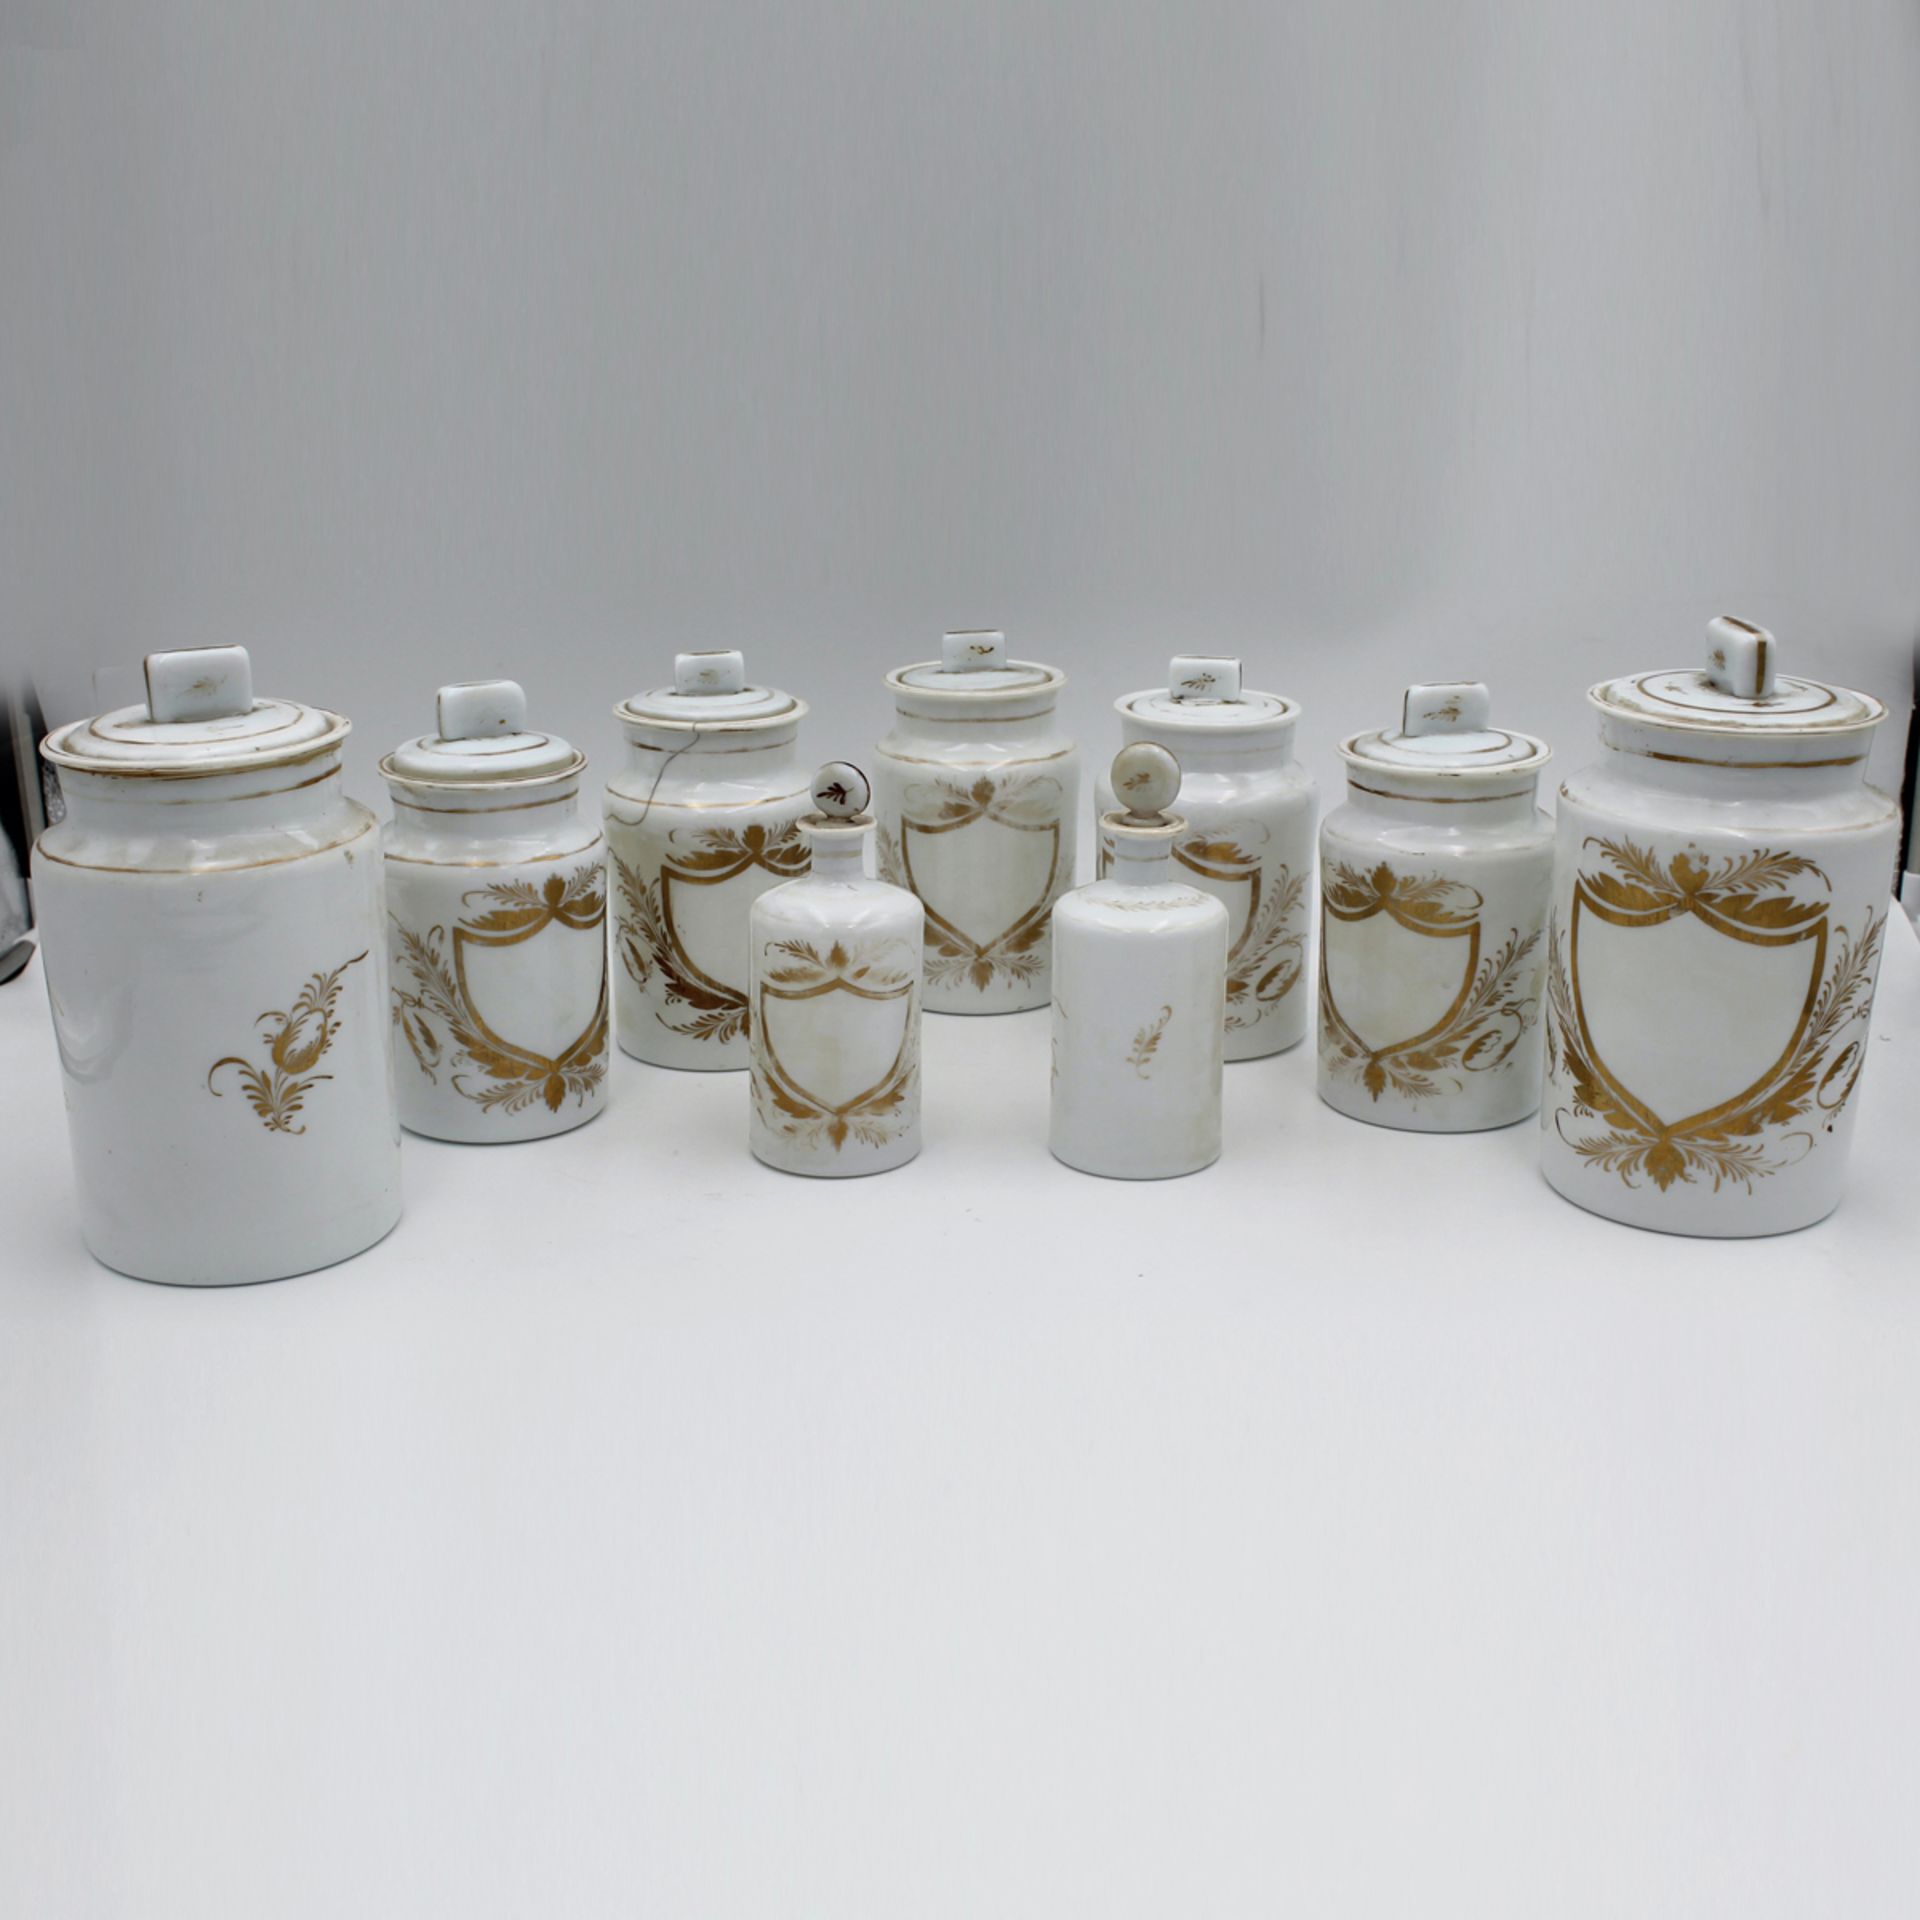 Diciotto vasi da farmacia - Eighteen apothecary jars - Image 2 of 2